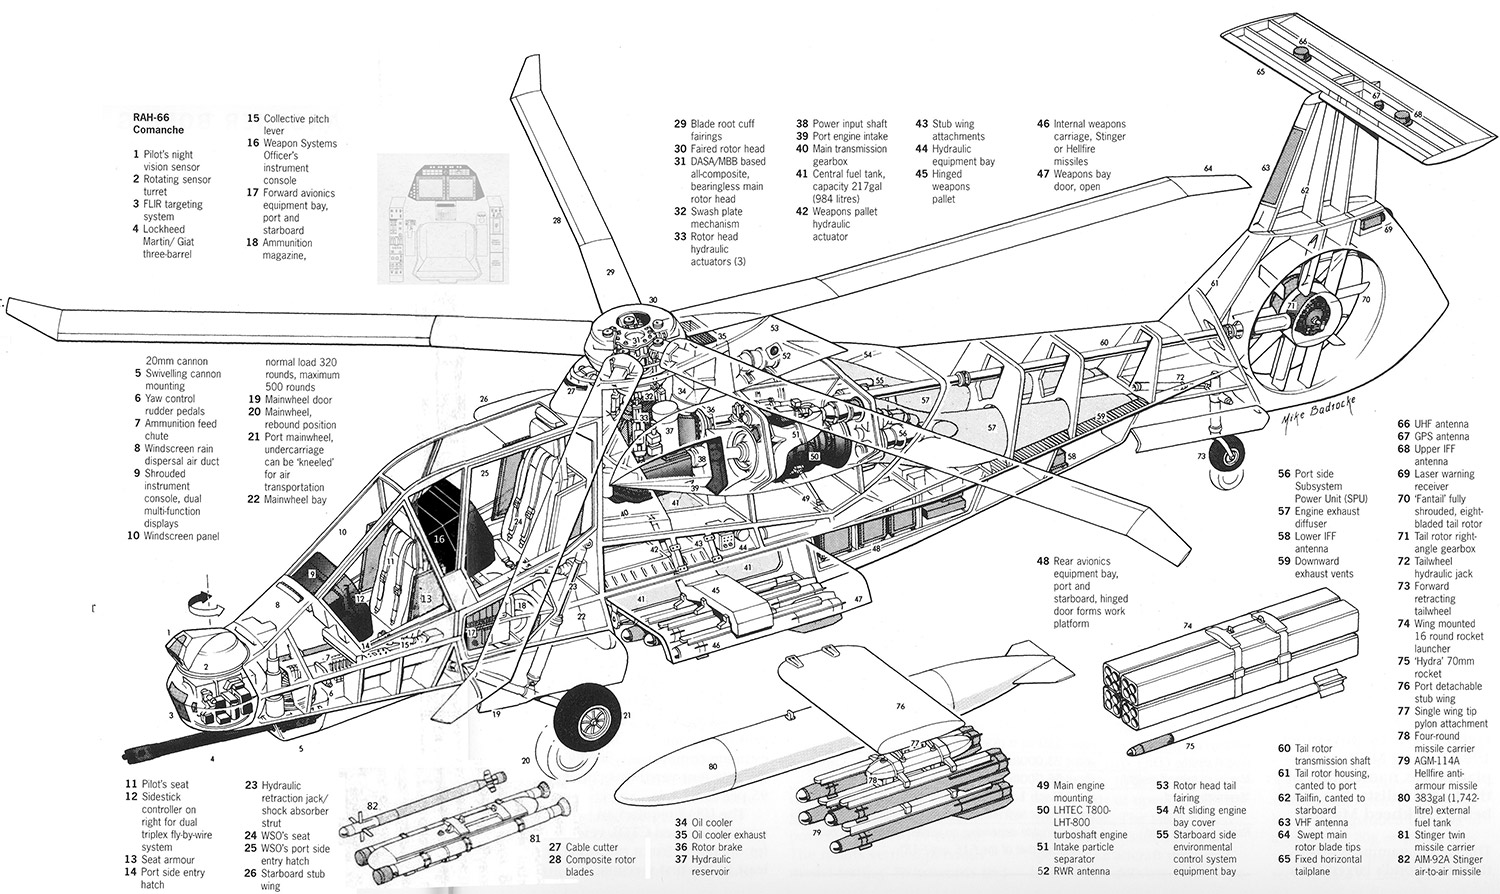 Внутреннее устройство вертолета RAH-66 «Команч»